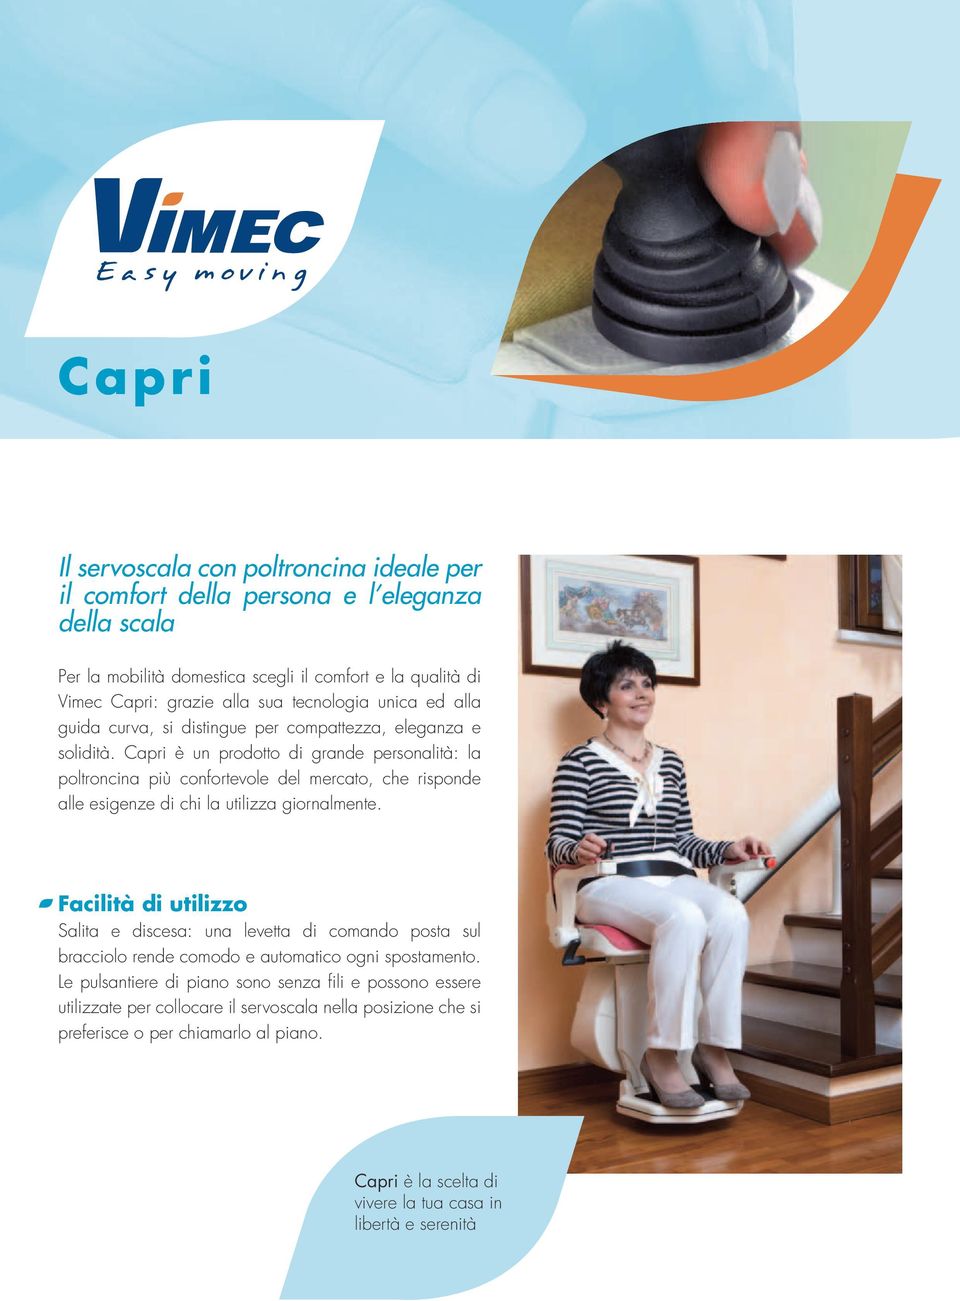 Capri è un prodotto di grande personalità: la poltroncina più confortevole del mercato, che risponde alle esigenze di chi la utilizza giornalmente.